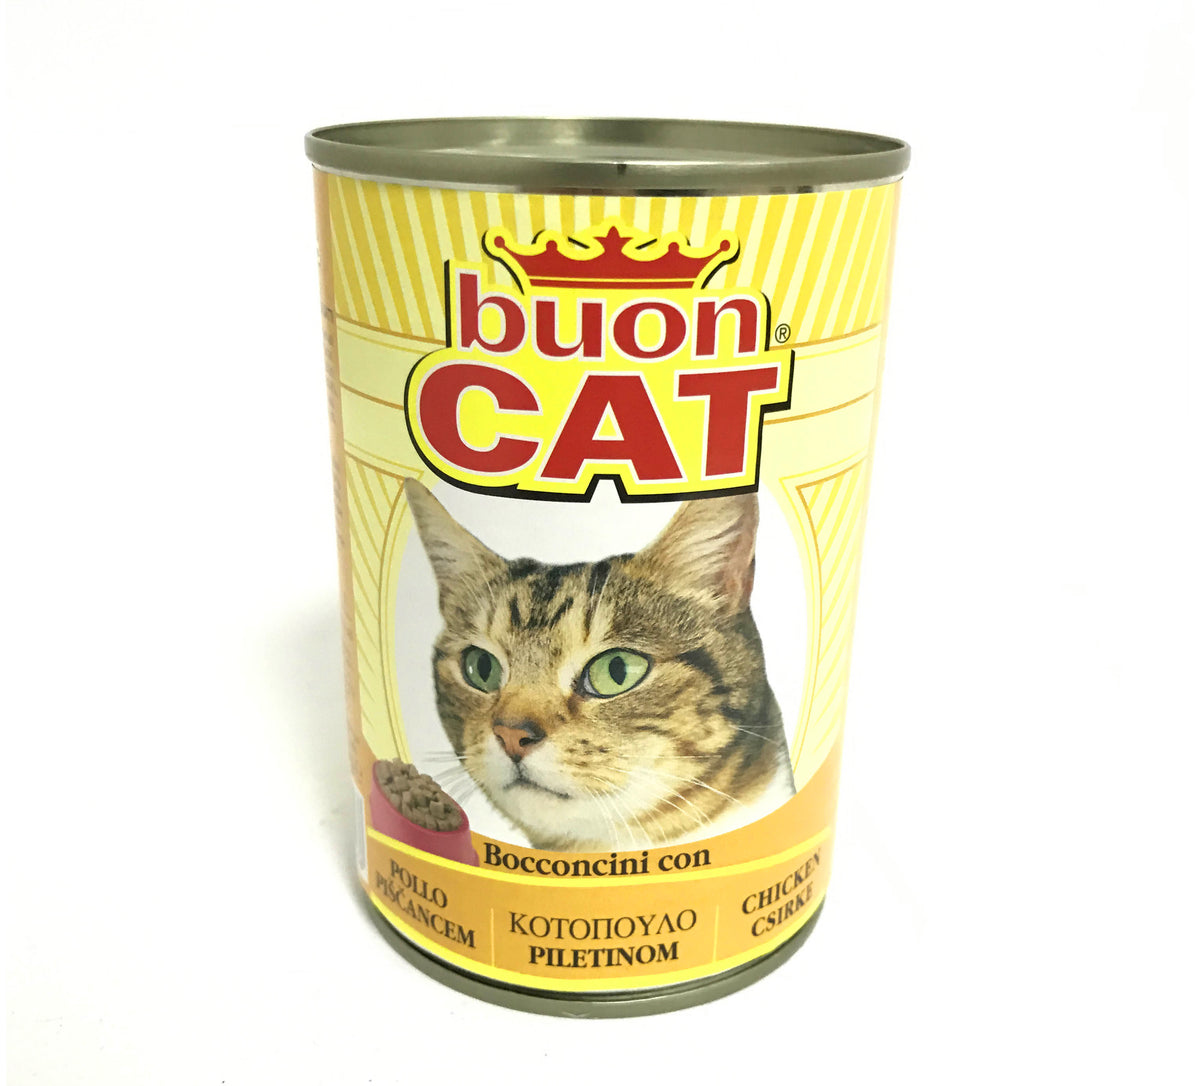 Buon Cat - Cat Bocconi gr.405